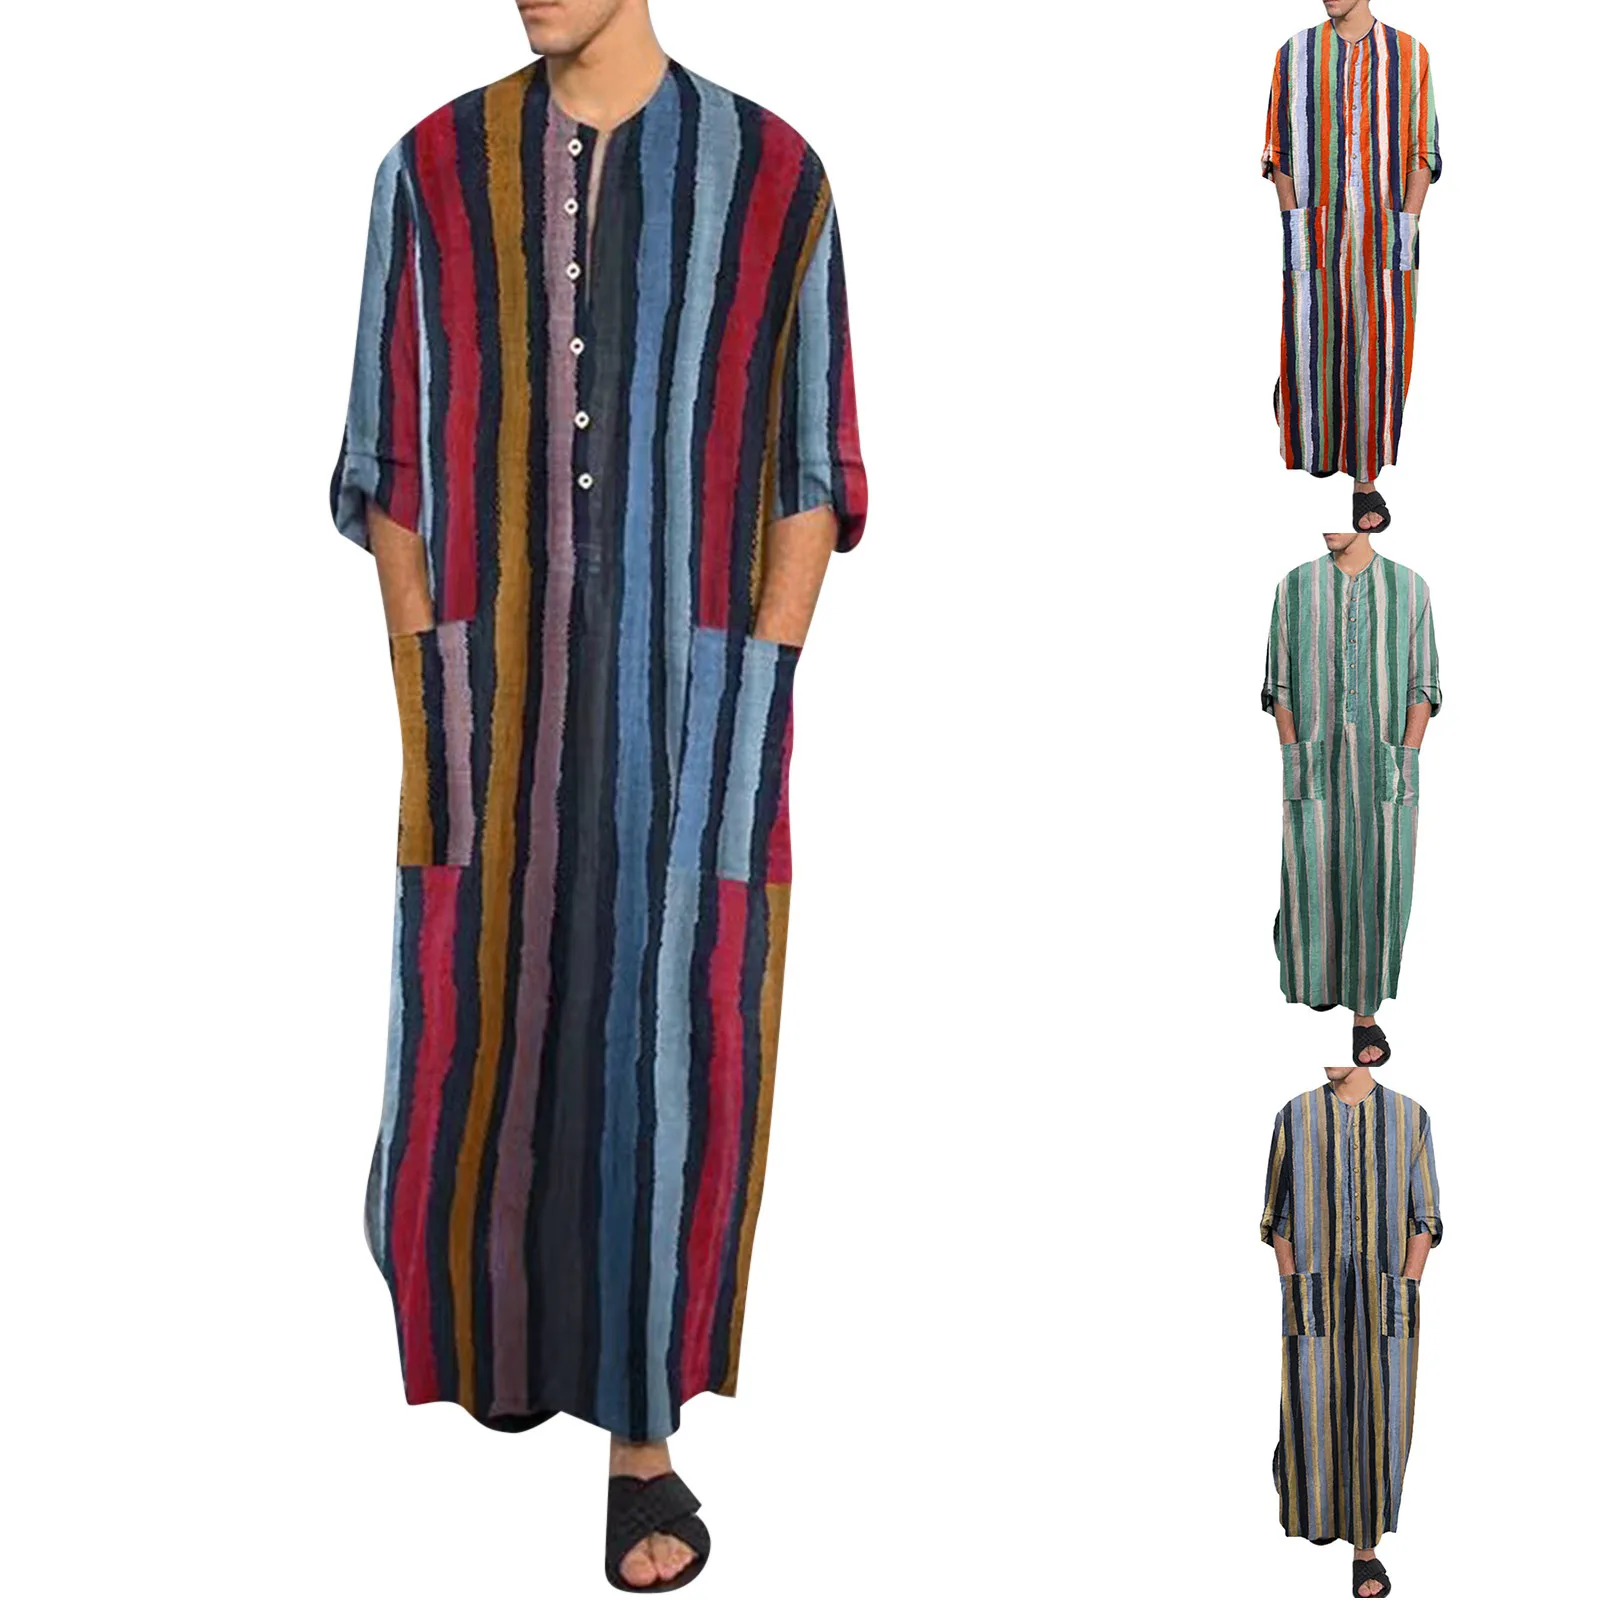 Robes musulmanes imprimées à rayures de style ethnique pour hommes avec boutons, caftan vintage, robes islamiques arabes de Dubaï, mode décontractée